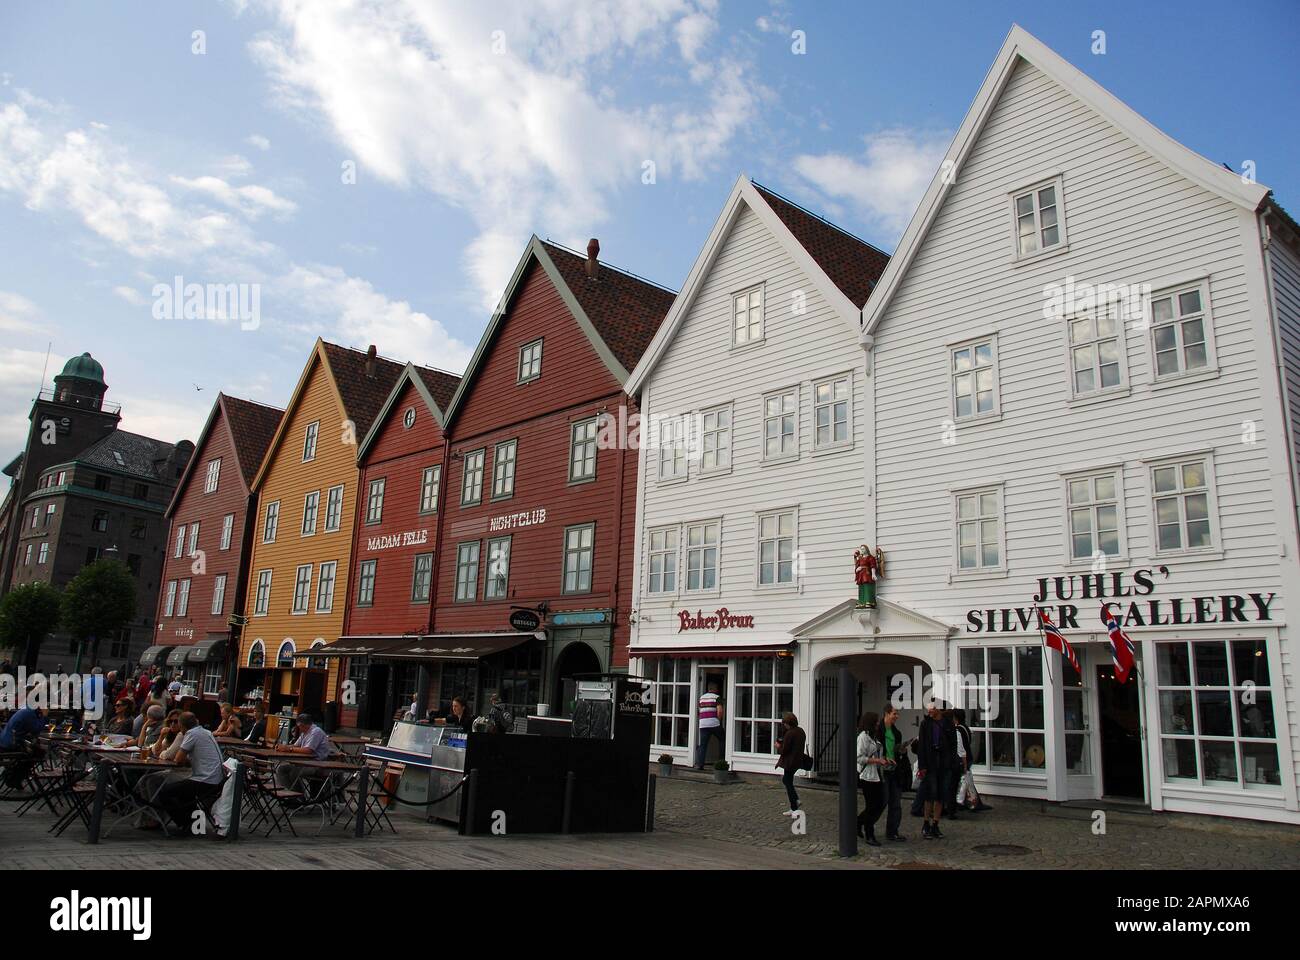 Norway, Bergen Bryggen UNESCO list for World Cultural Heritage sites Stock Photo